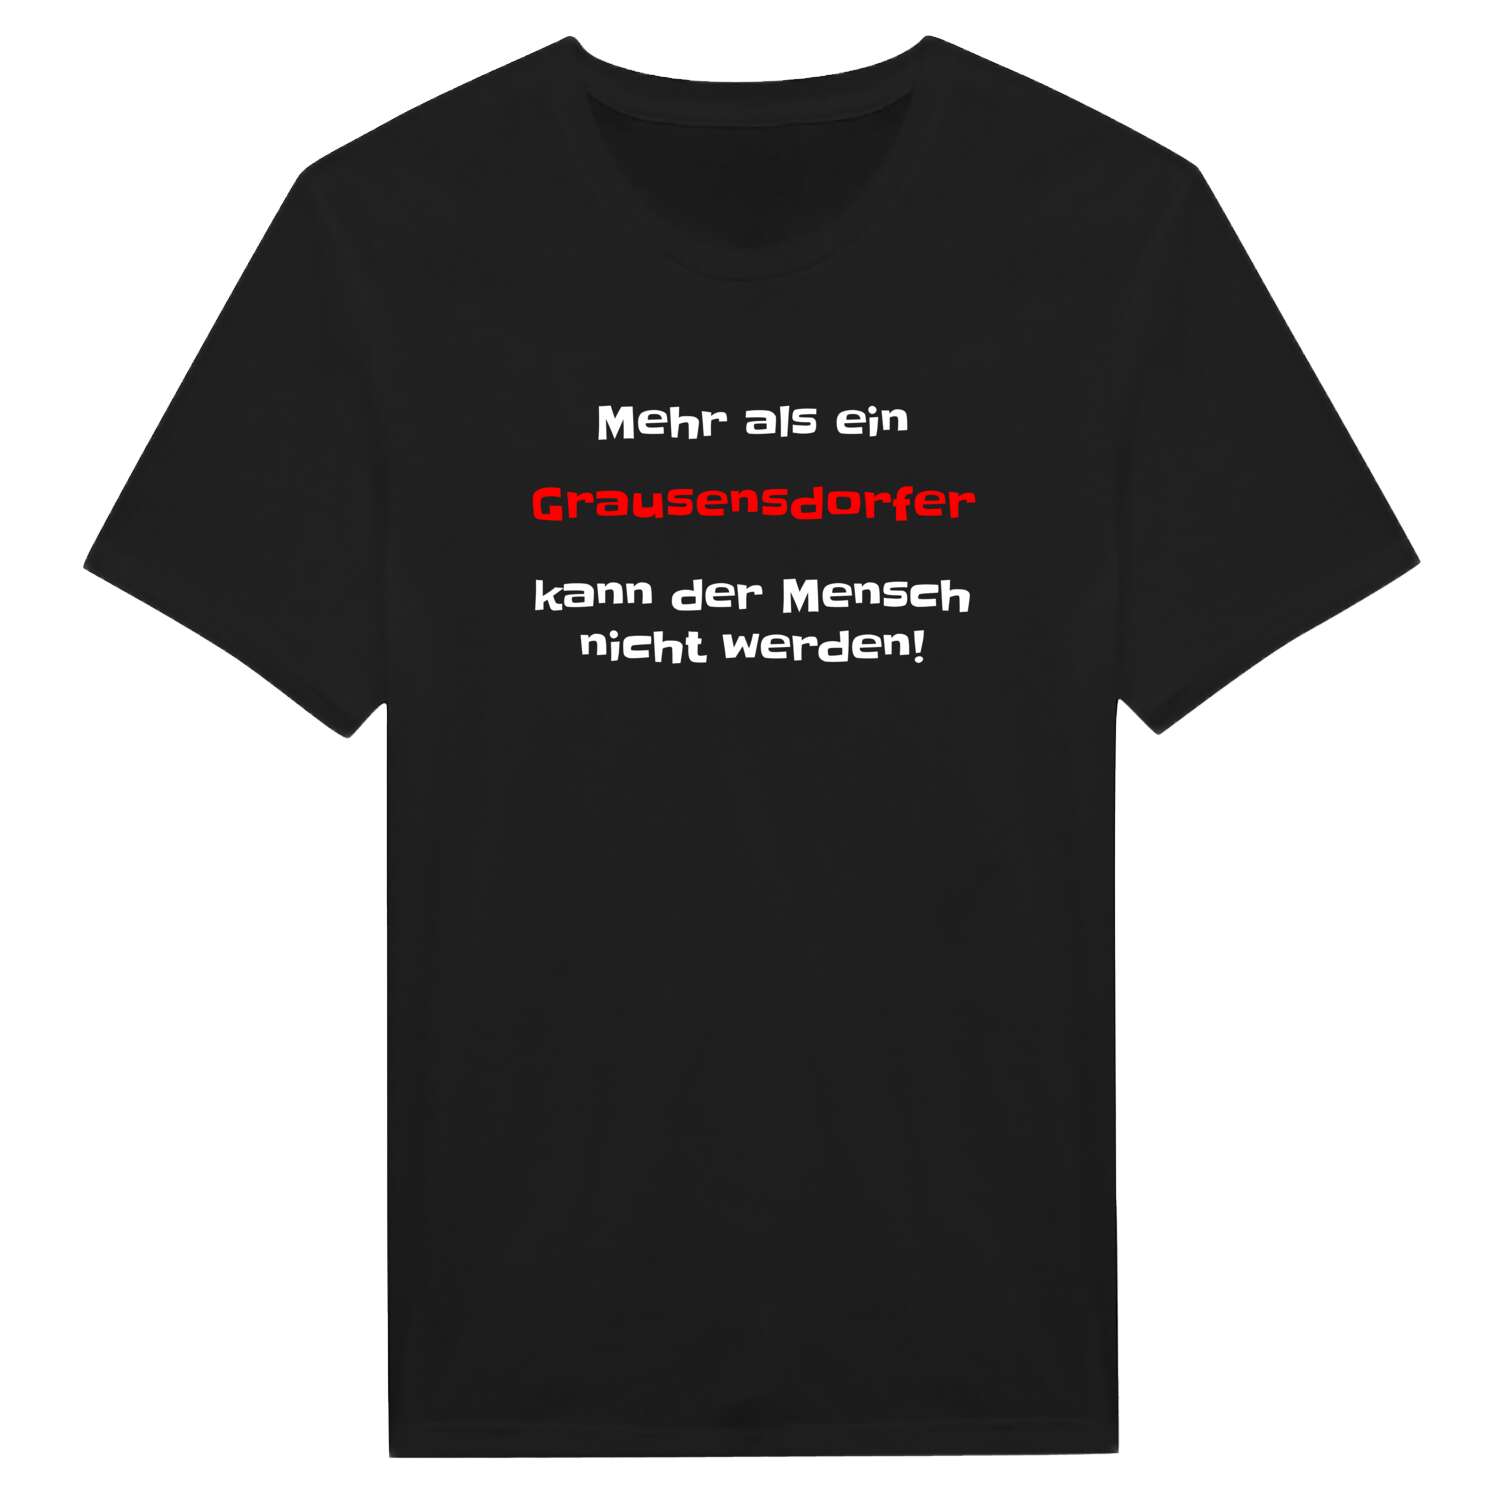 Grausensdorf T-Shirt »Mehr als ein«